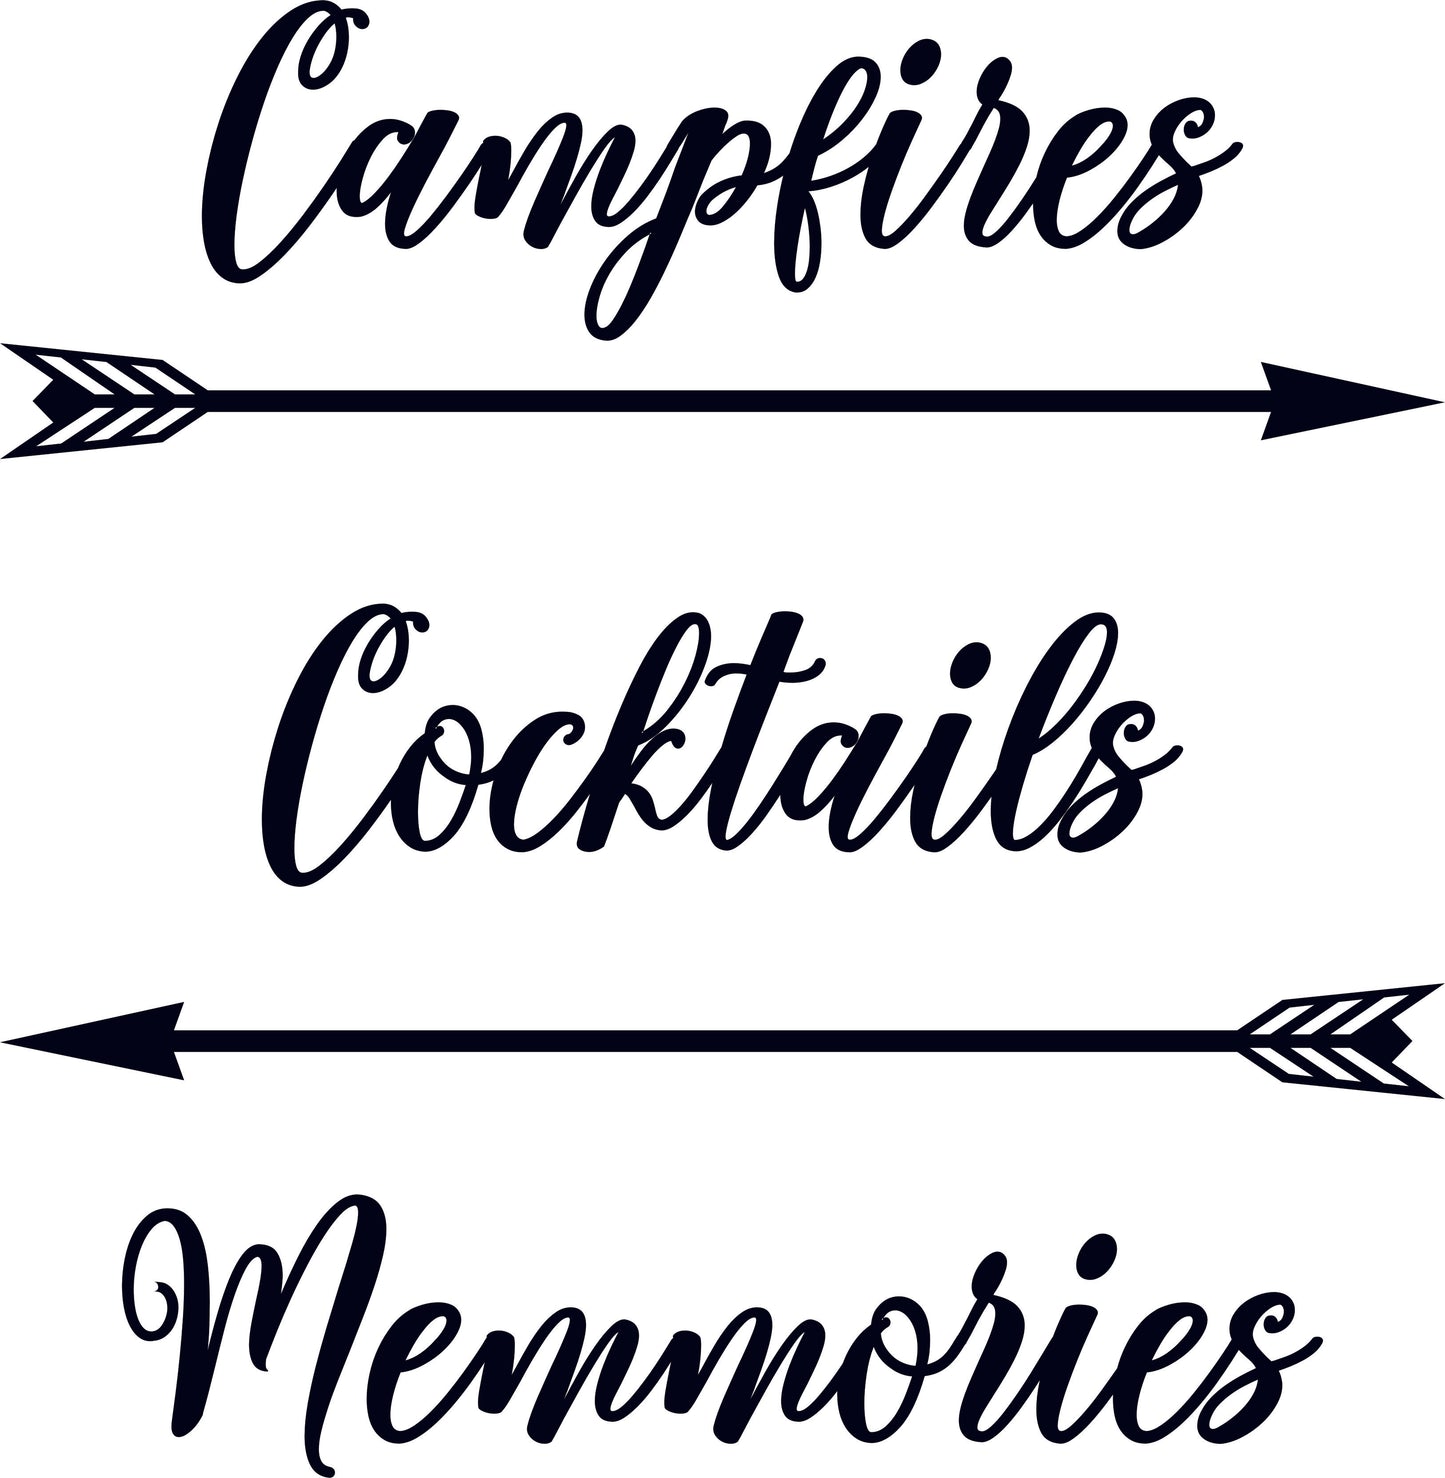 Campfires Cocktails Memories RV Door or Slide Vinyl Sticker Decal Graphic